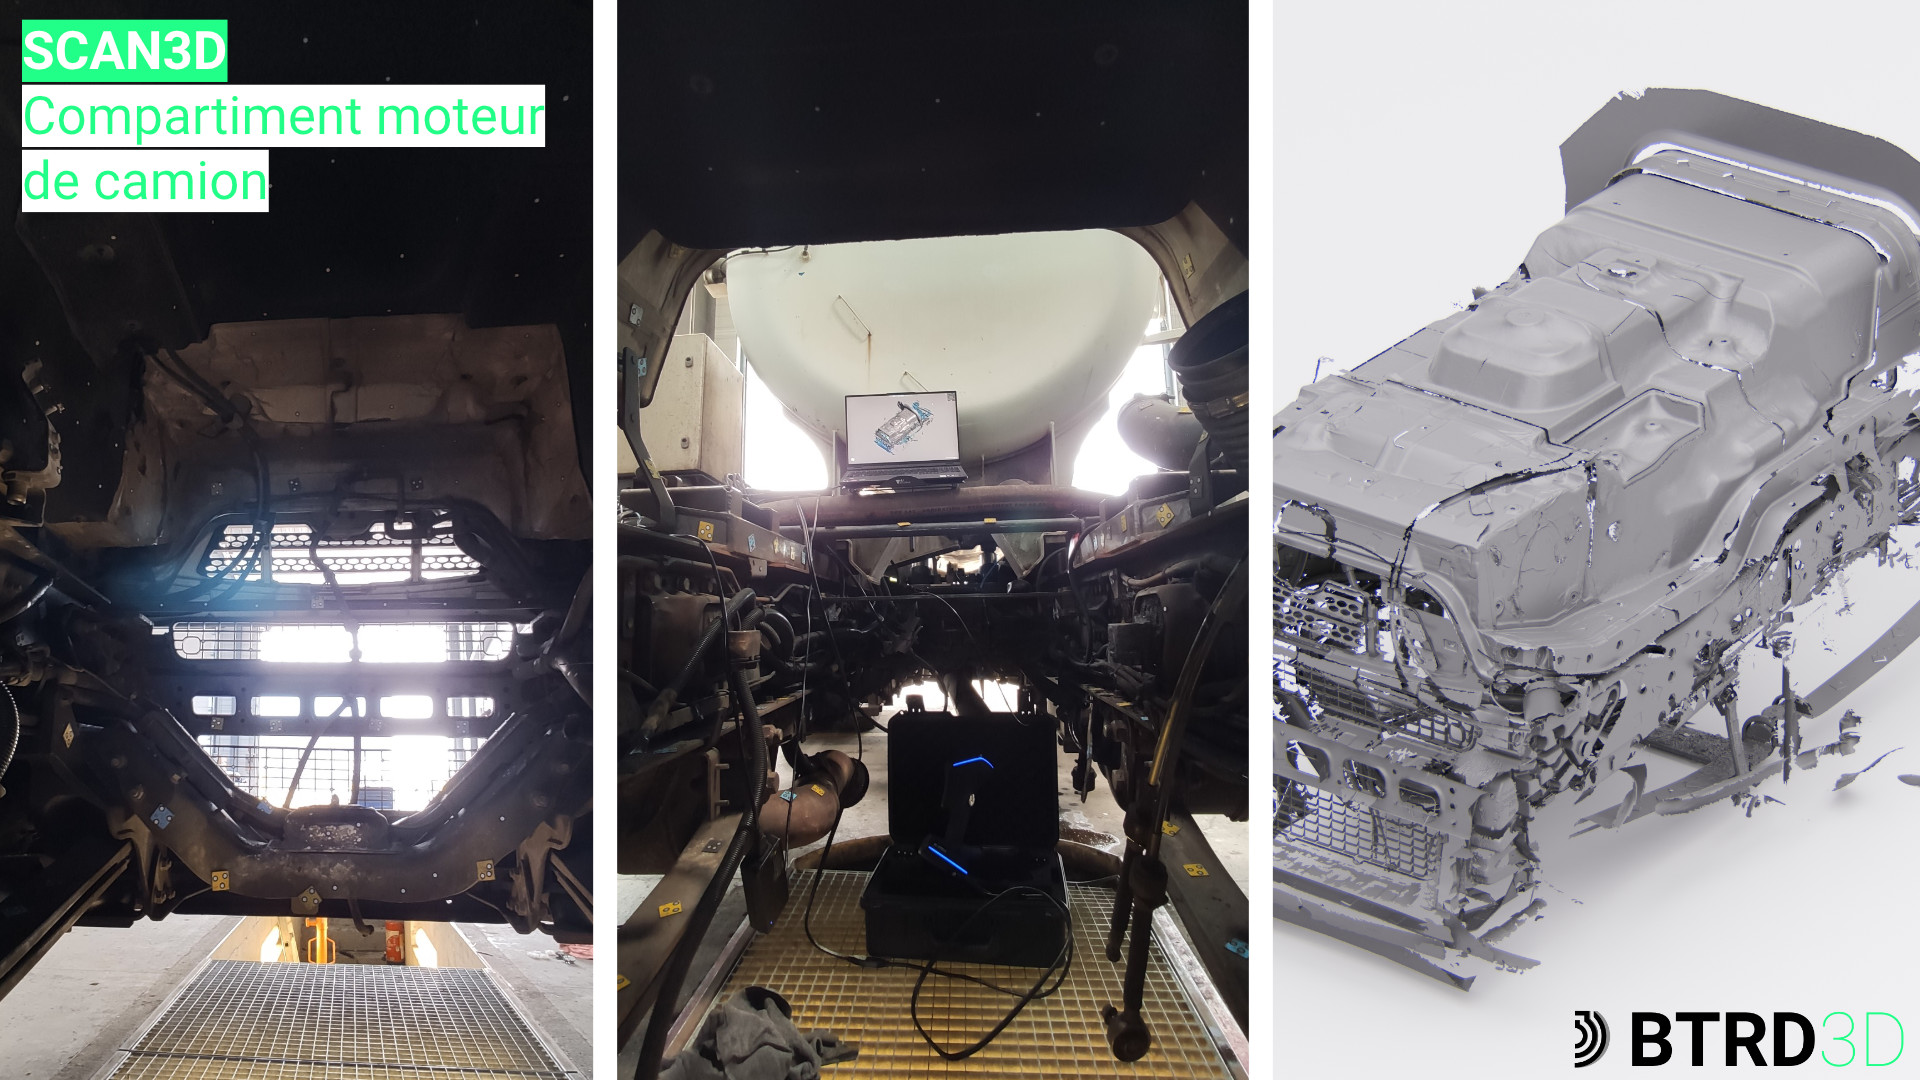 scan 3d compartiment moteur renault truck retrofit